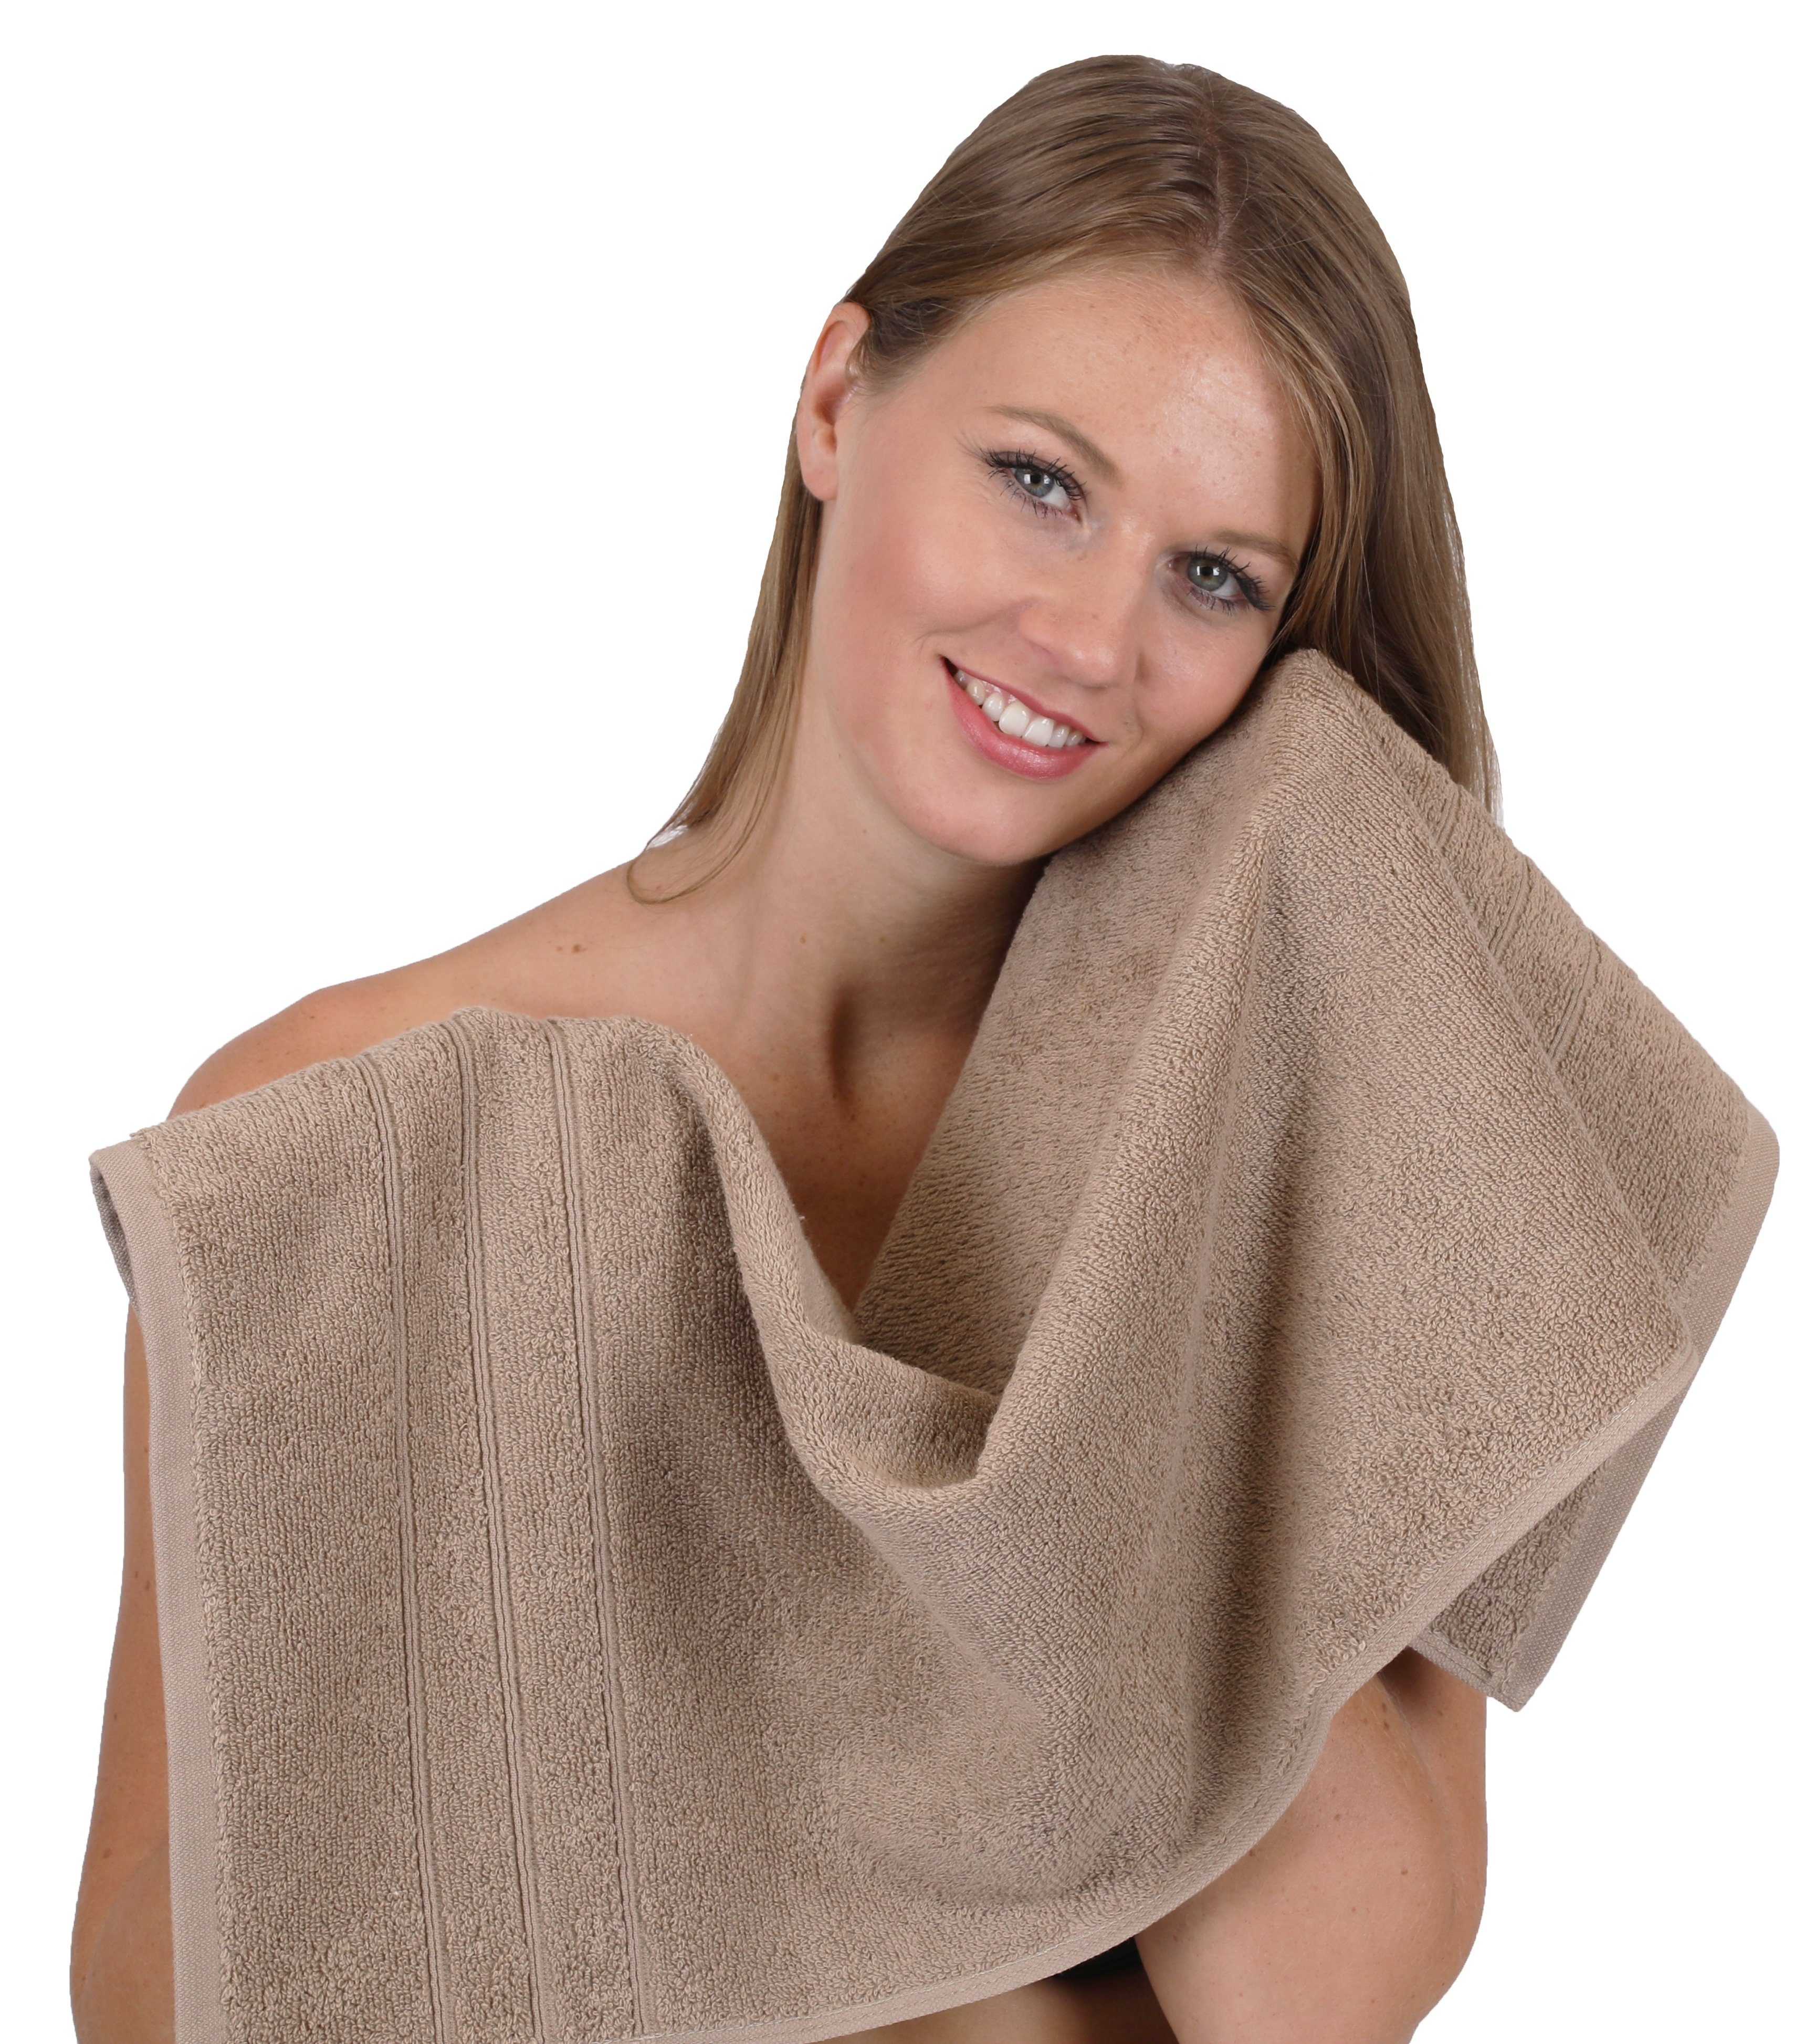 Baumwolle, 100% Duschtücher Handtuch-Set Betz 100% 2 Seiftücher, 8-TLG 2 2 2 mokka Badetücher Baumwolle Deluxe (8-tlg) Handtuch Handtücher Set